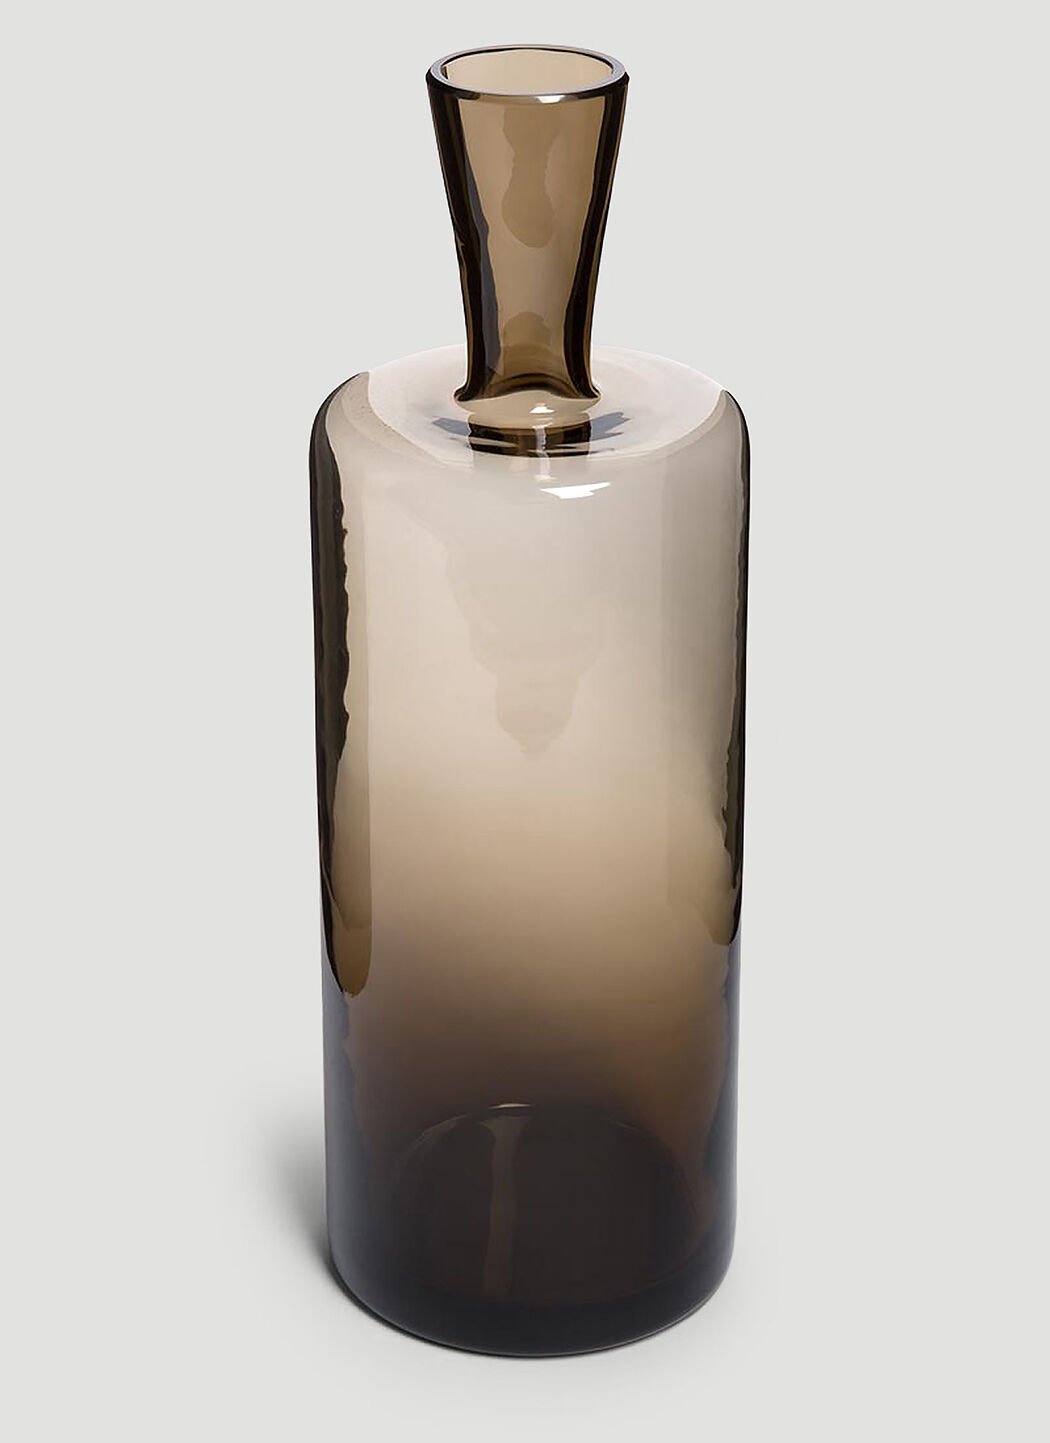 Marloe Marloe Morandi Bottle 크림 rlo0351006